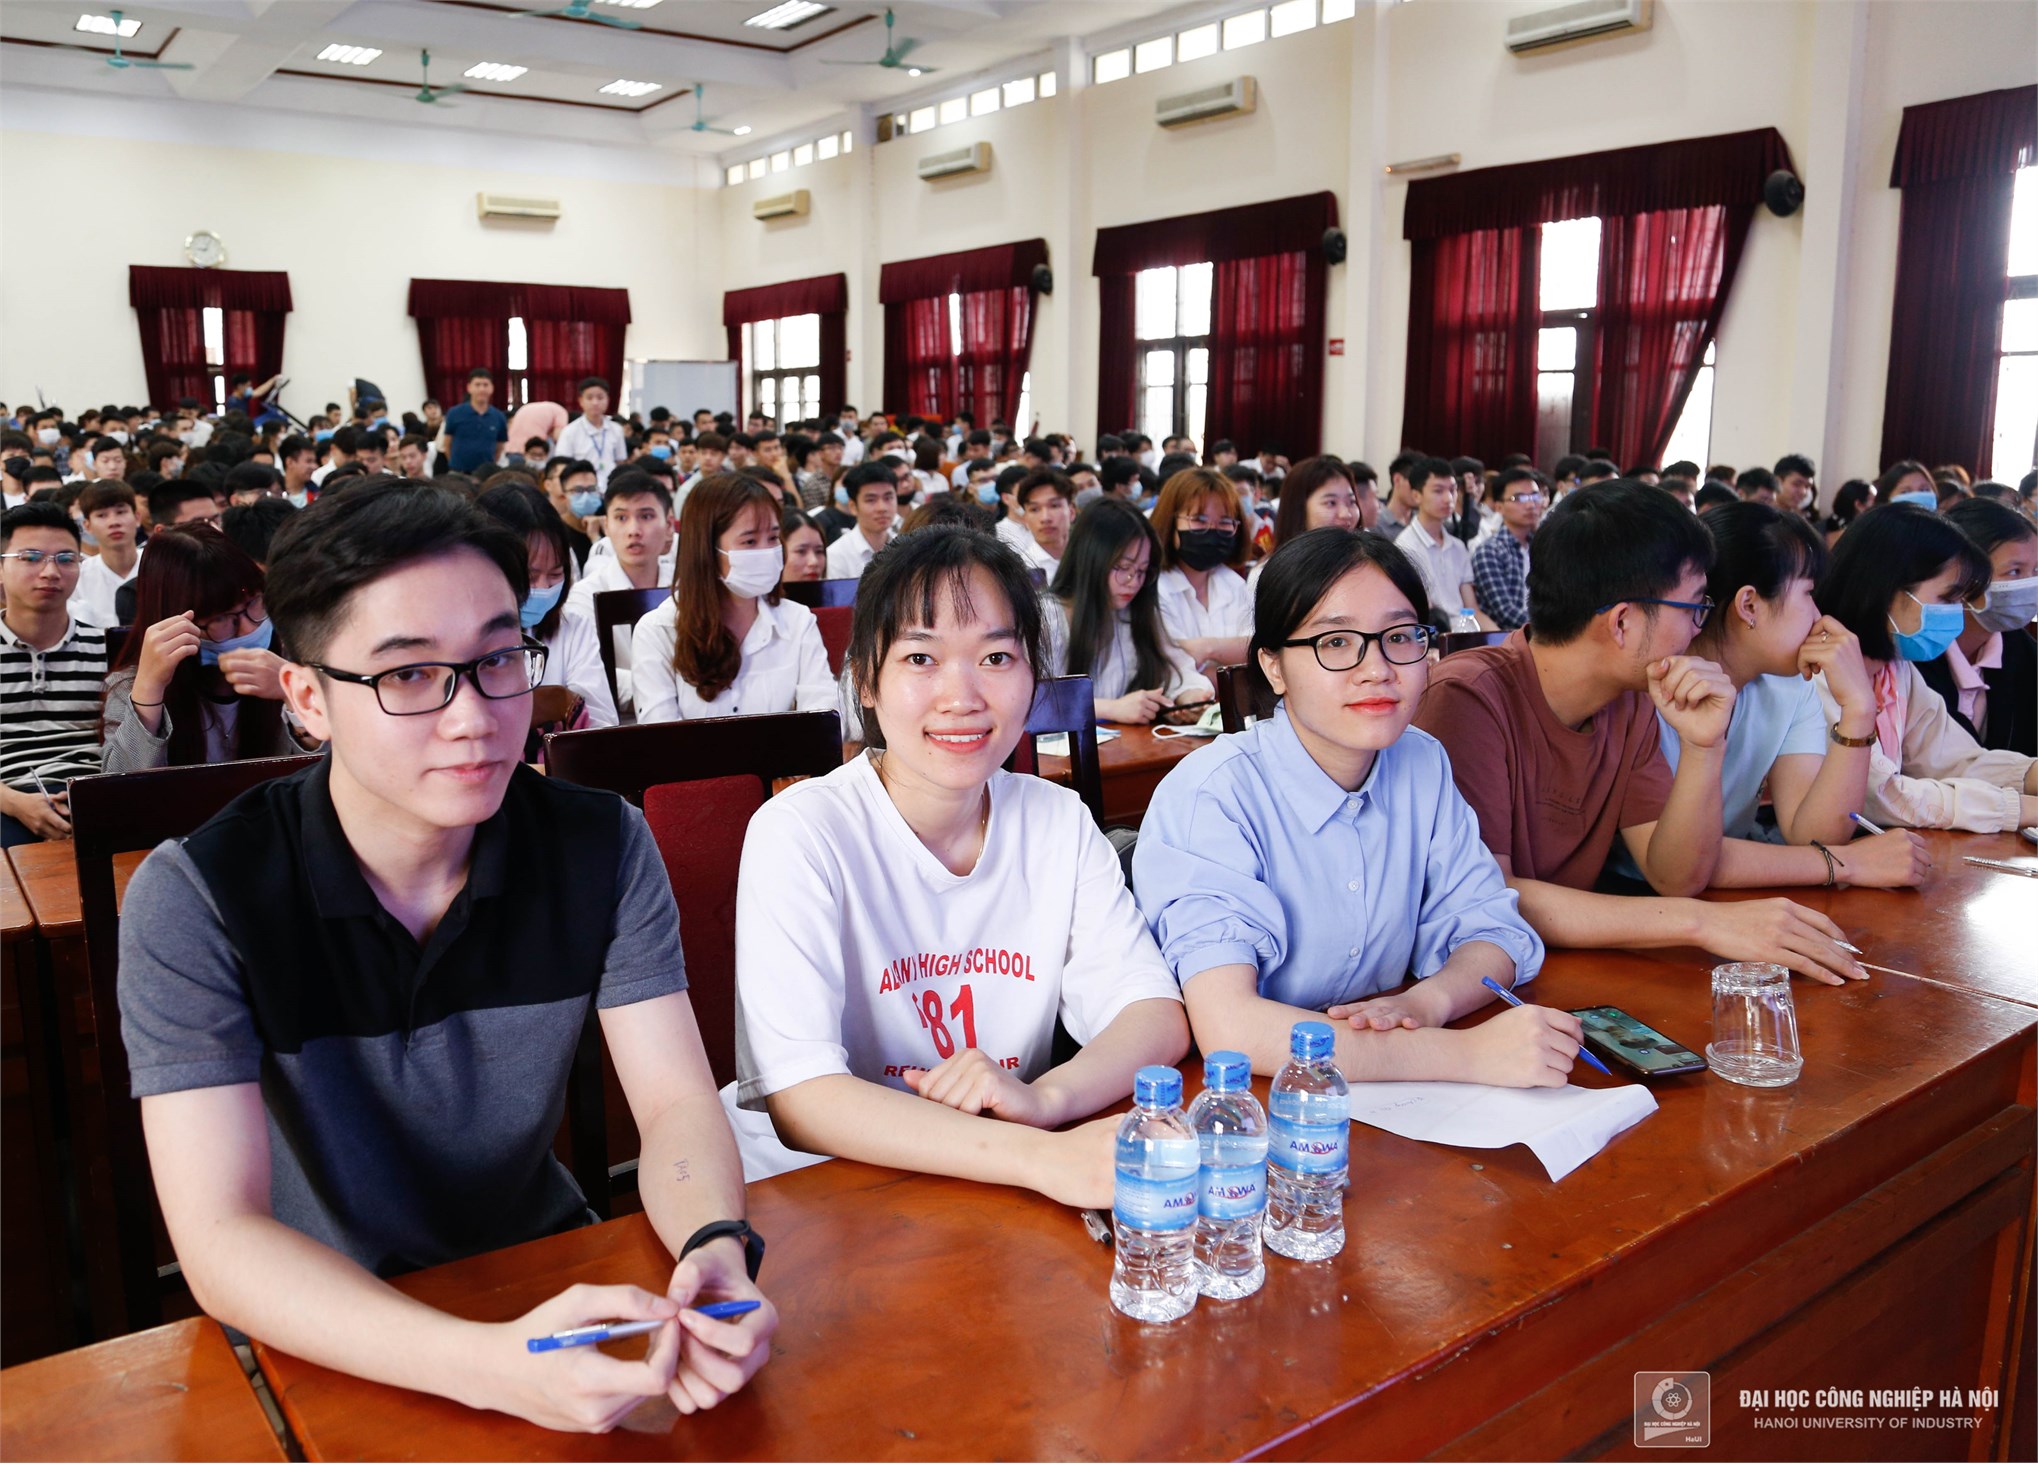 1000 cơ hội việc làm tại Tập đoàn Khoa học Kỹ thuật Hồng Hải Foxconn dành cho sinh viên Đại học Công nghiệp Hà Nội 